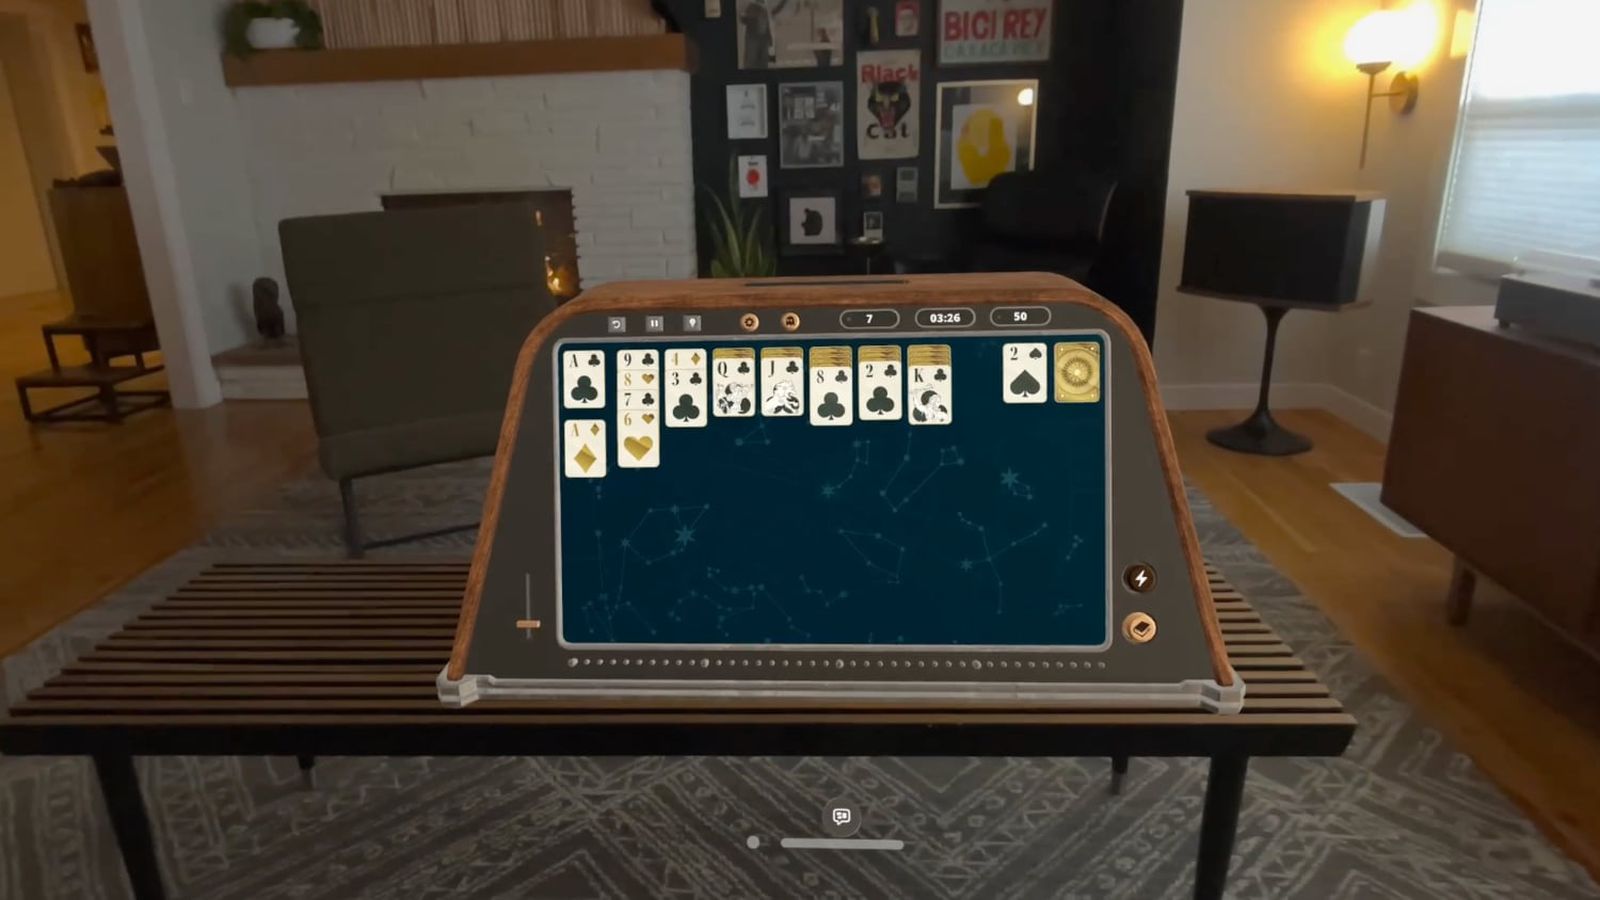 من iPhoneIslam.com، لعبة سوليتير افتراضية يتم عرضها على جهاز الواقع المعزز في غرفة المعيشة ذات الديكور الحديث خلال الأسبوع من 19 إلى 25 أبريل.